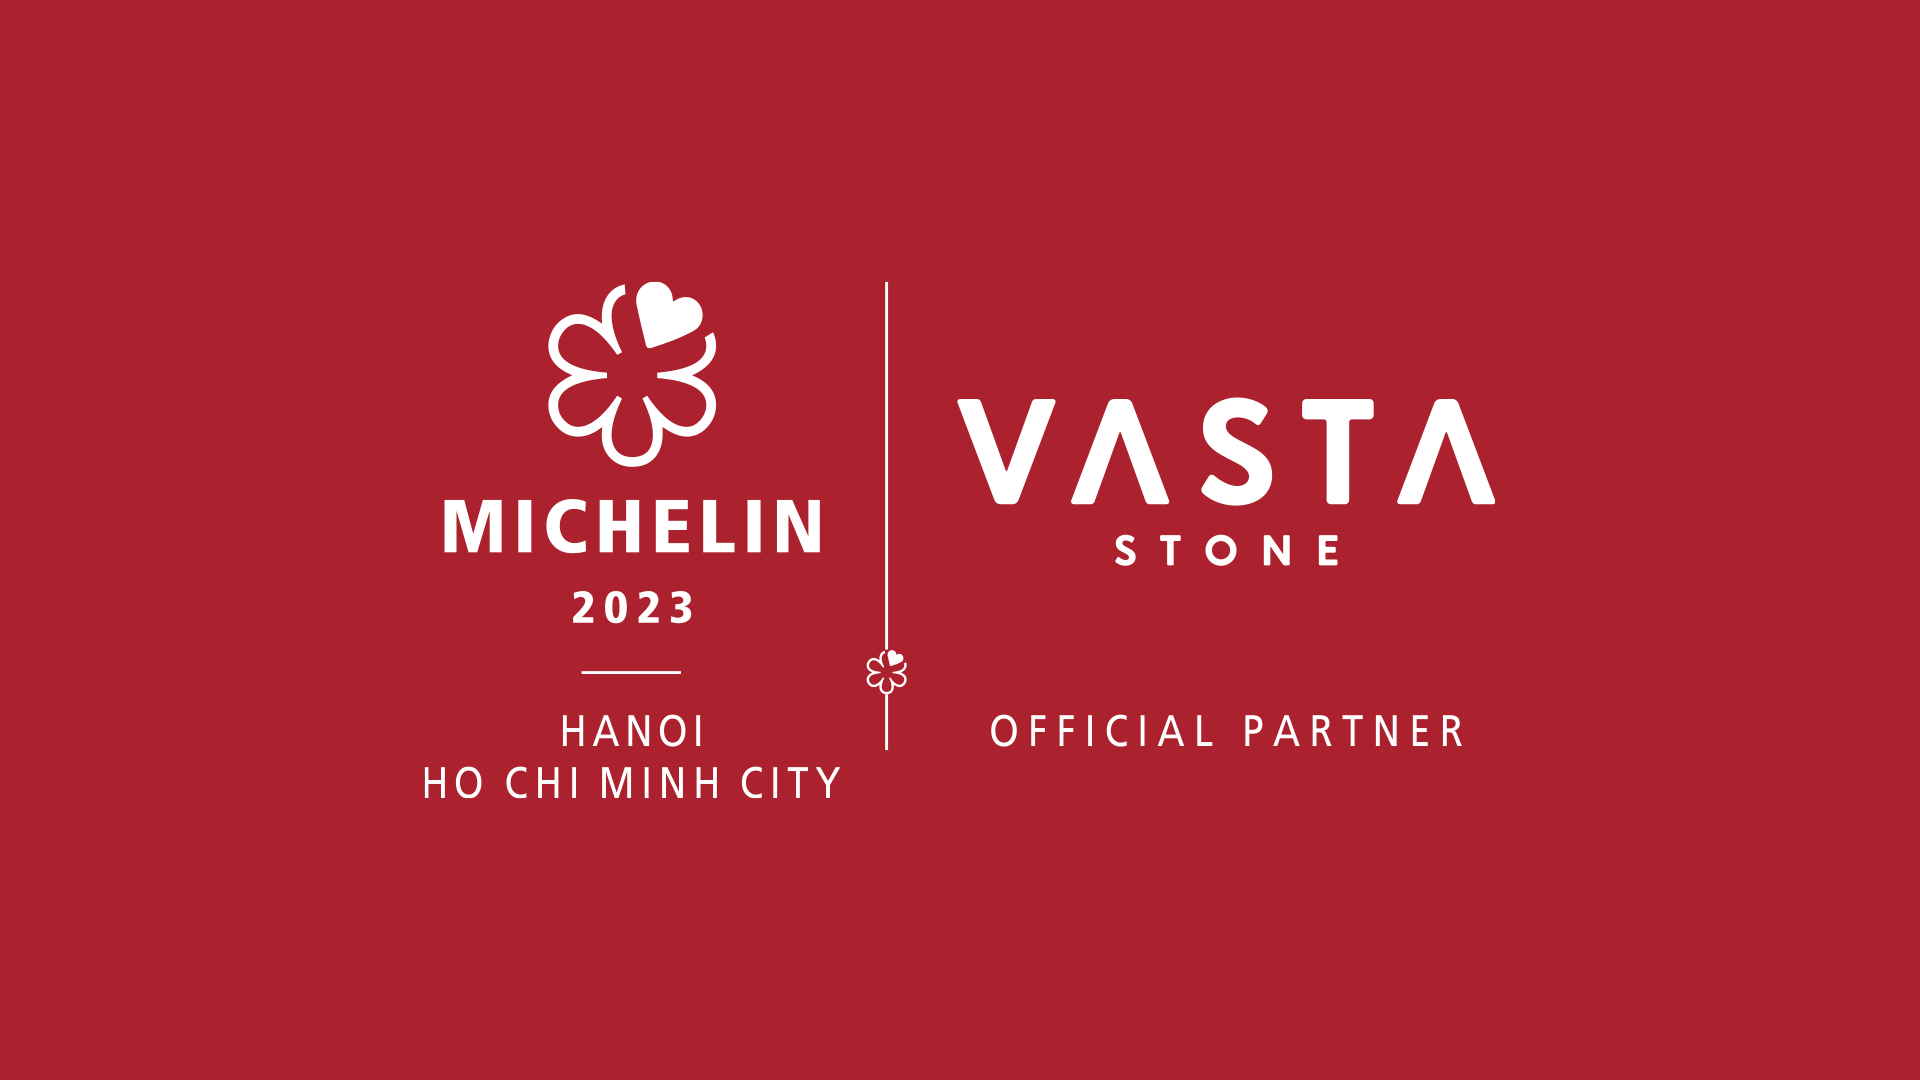 Vasta Stone hợp tác với MICHELIN Guide góp phần quảng bá ẩm thực danh giá của Việt Nam ra thế giới